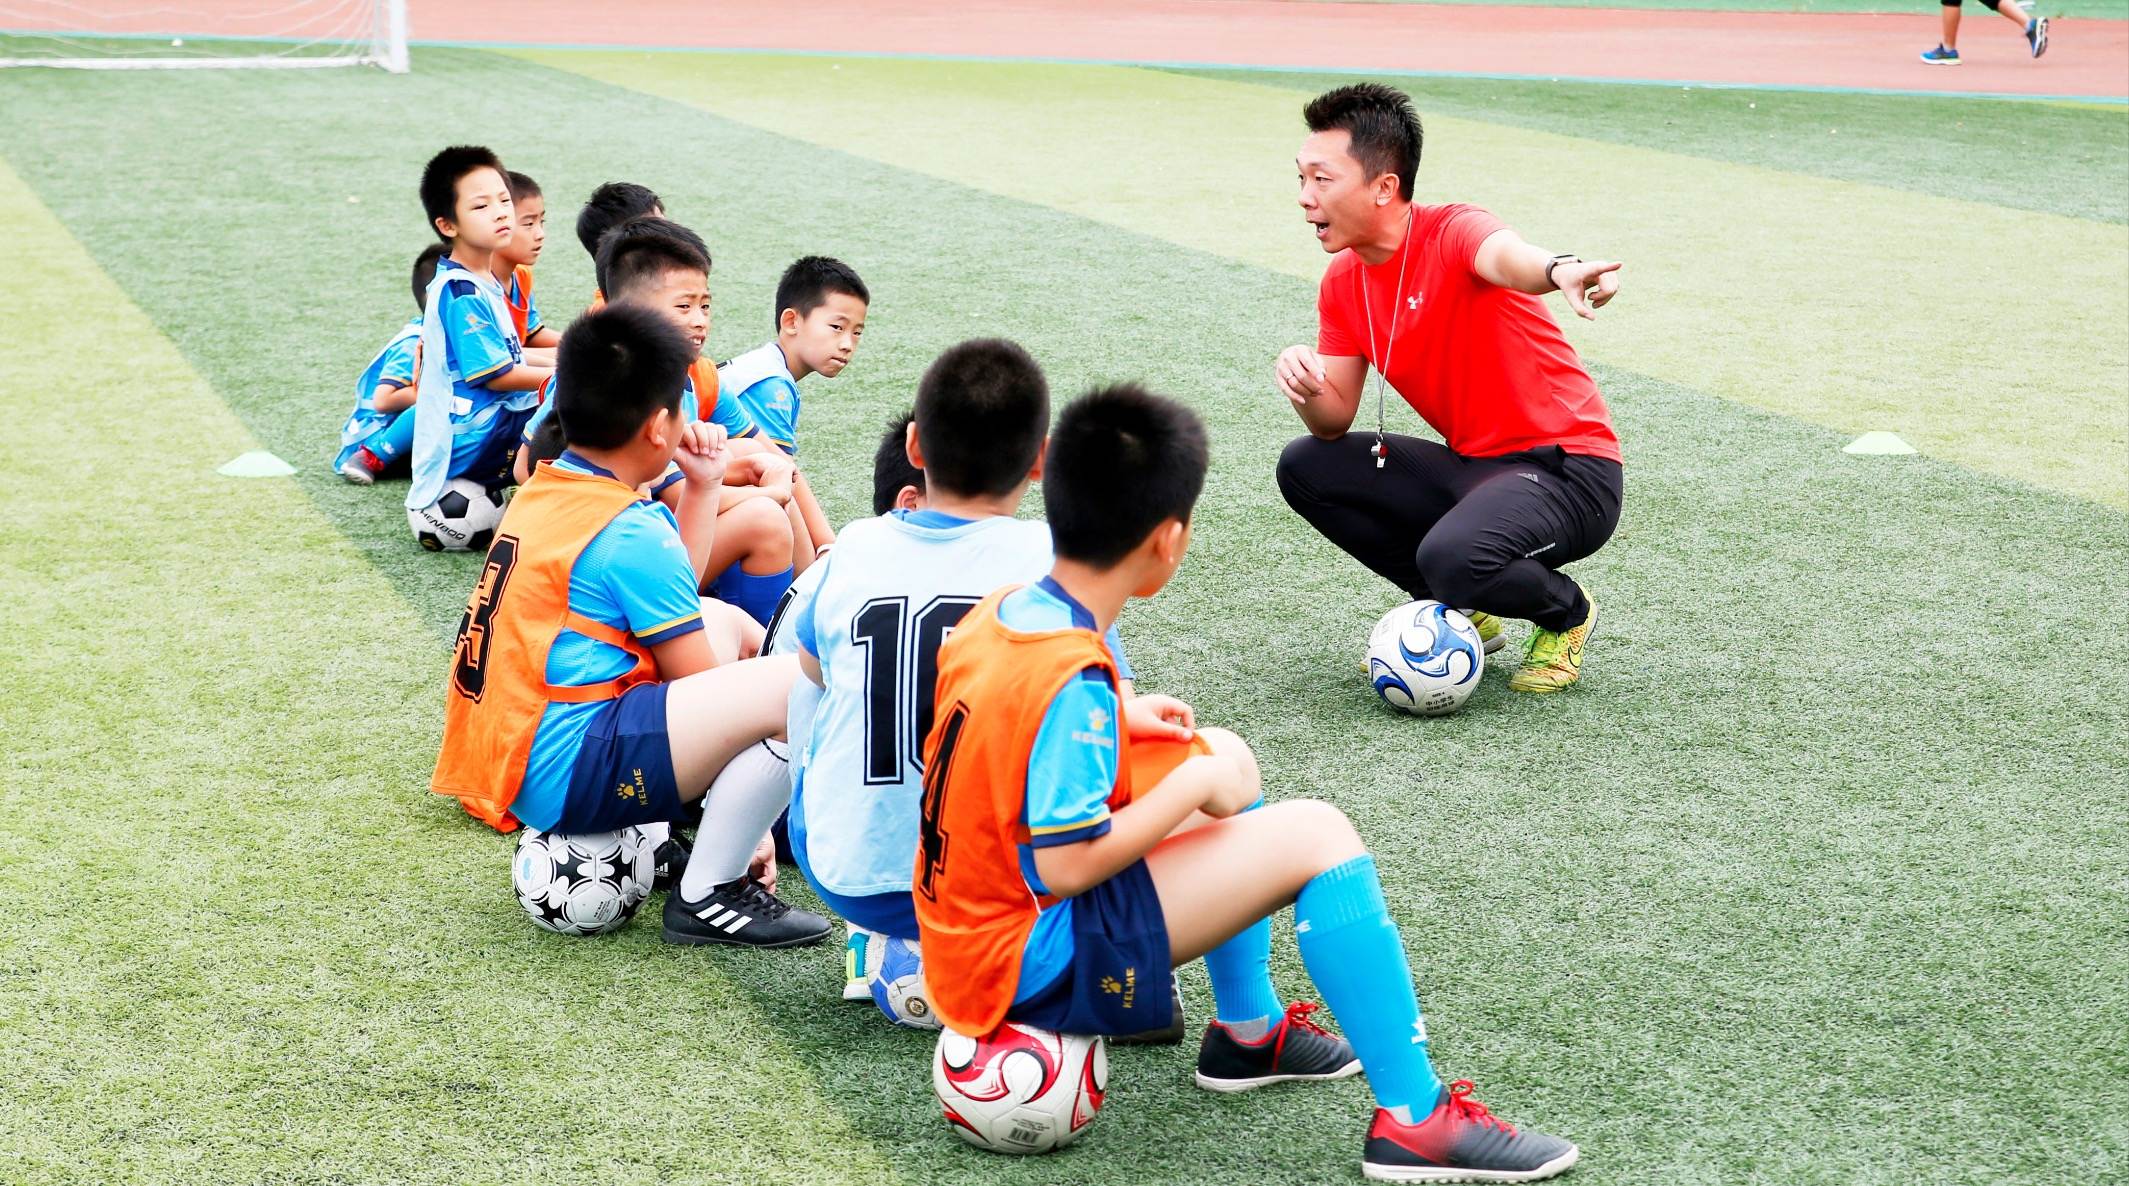 提高射门精准度的技能训练 - 涨球 | 最纯粹的青训足球教案平台